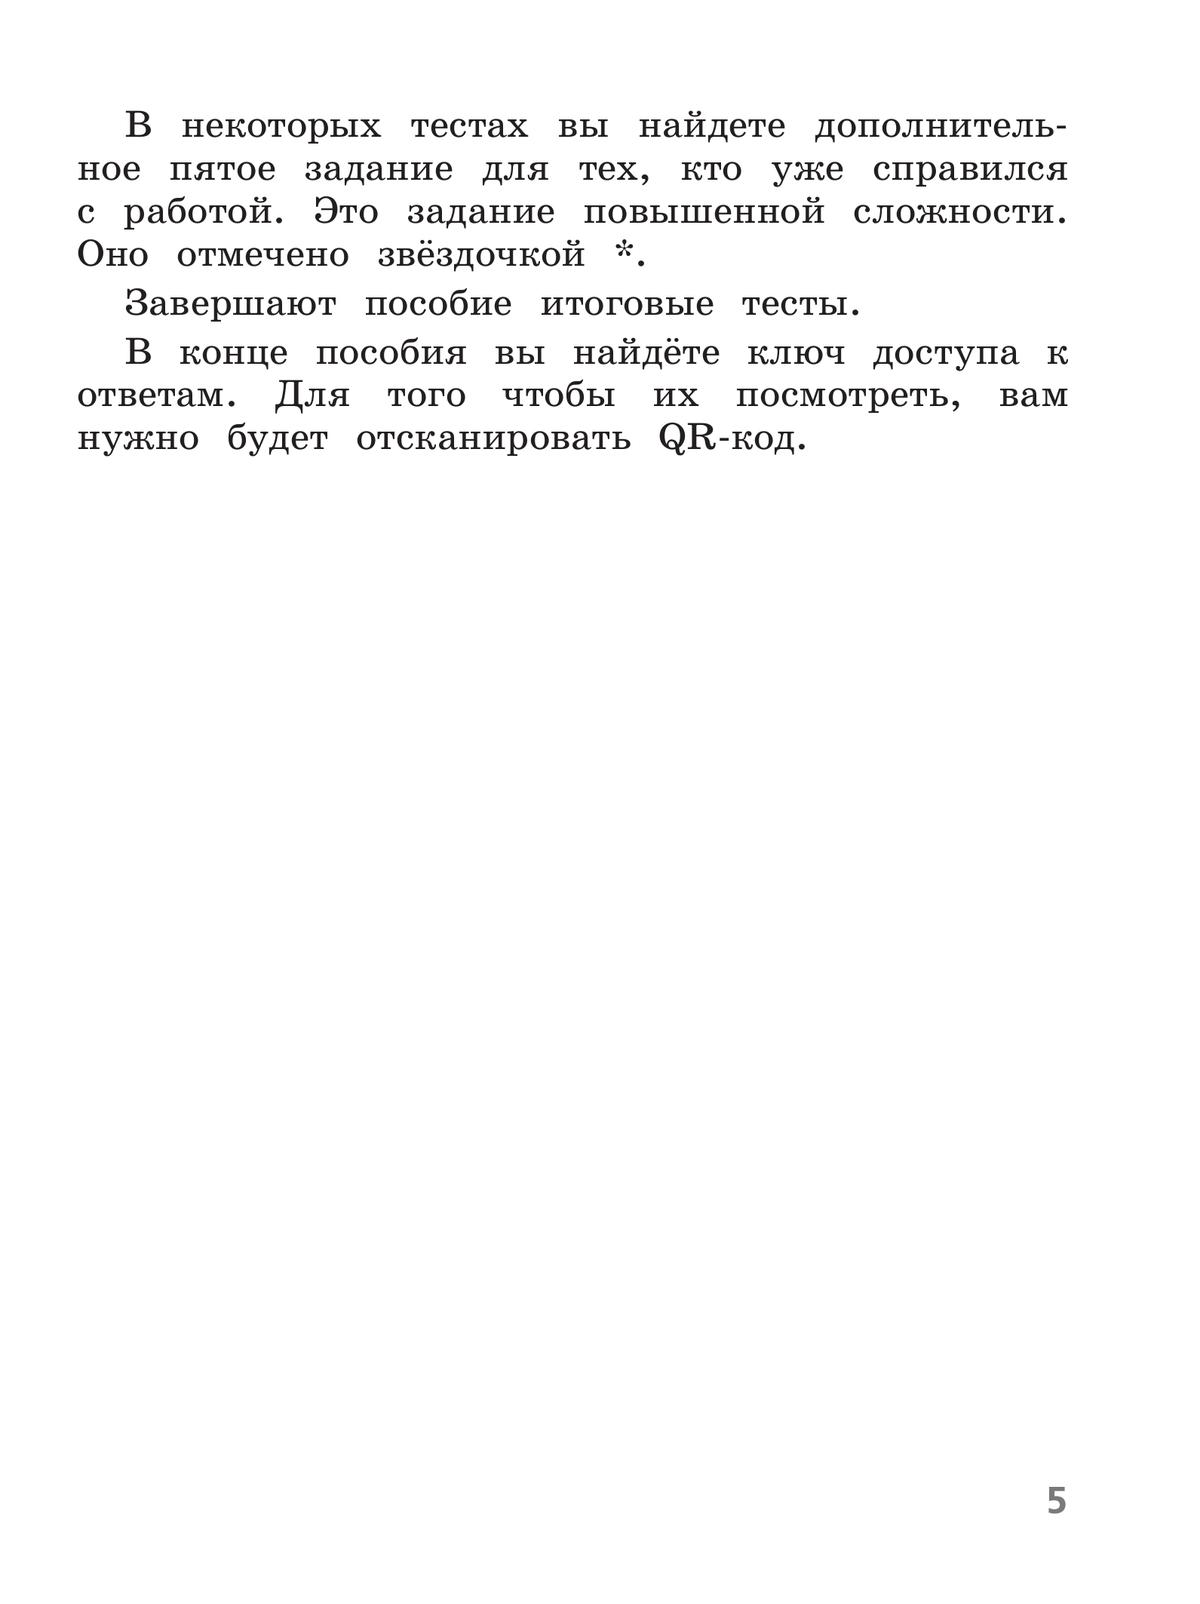 Русский язык. Тесты. 2 класс 4